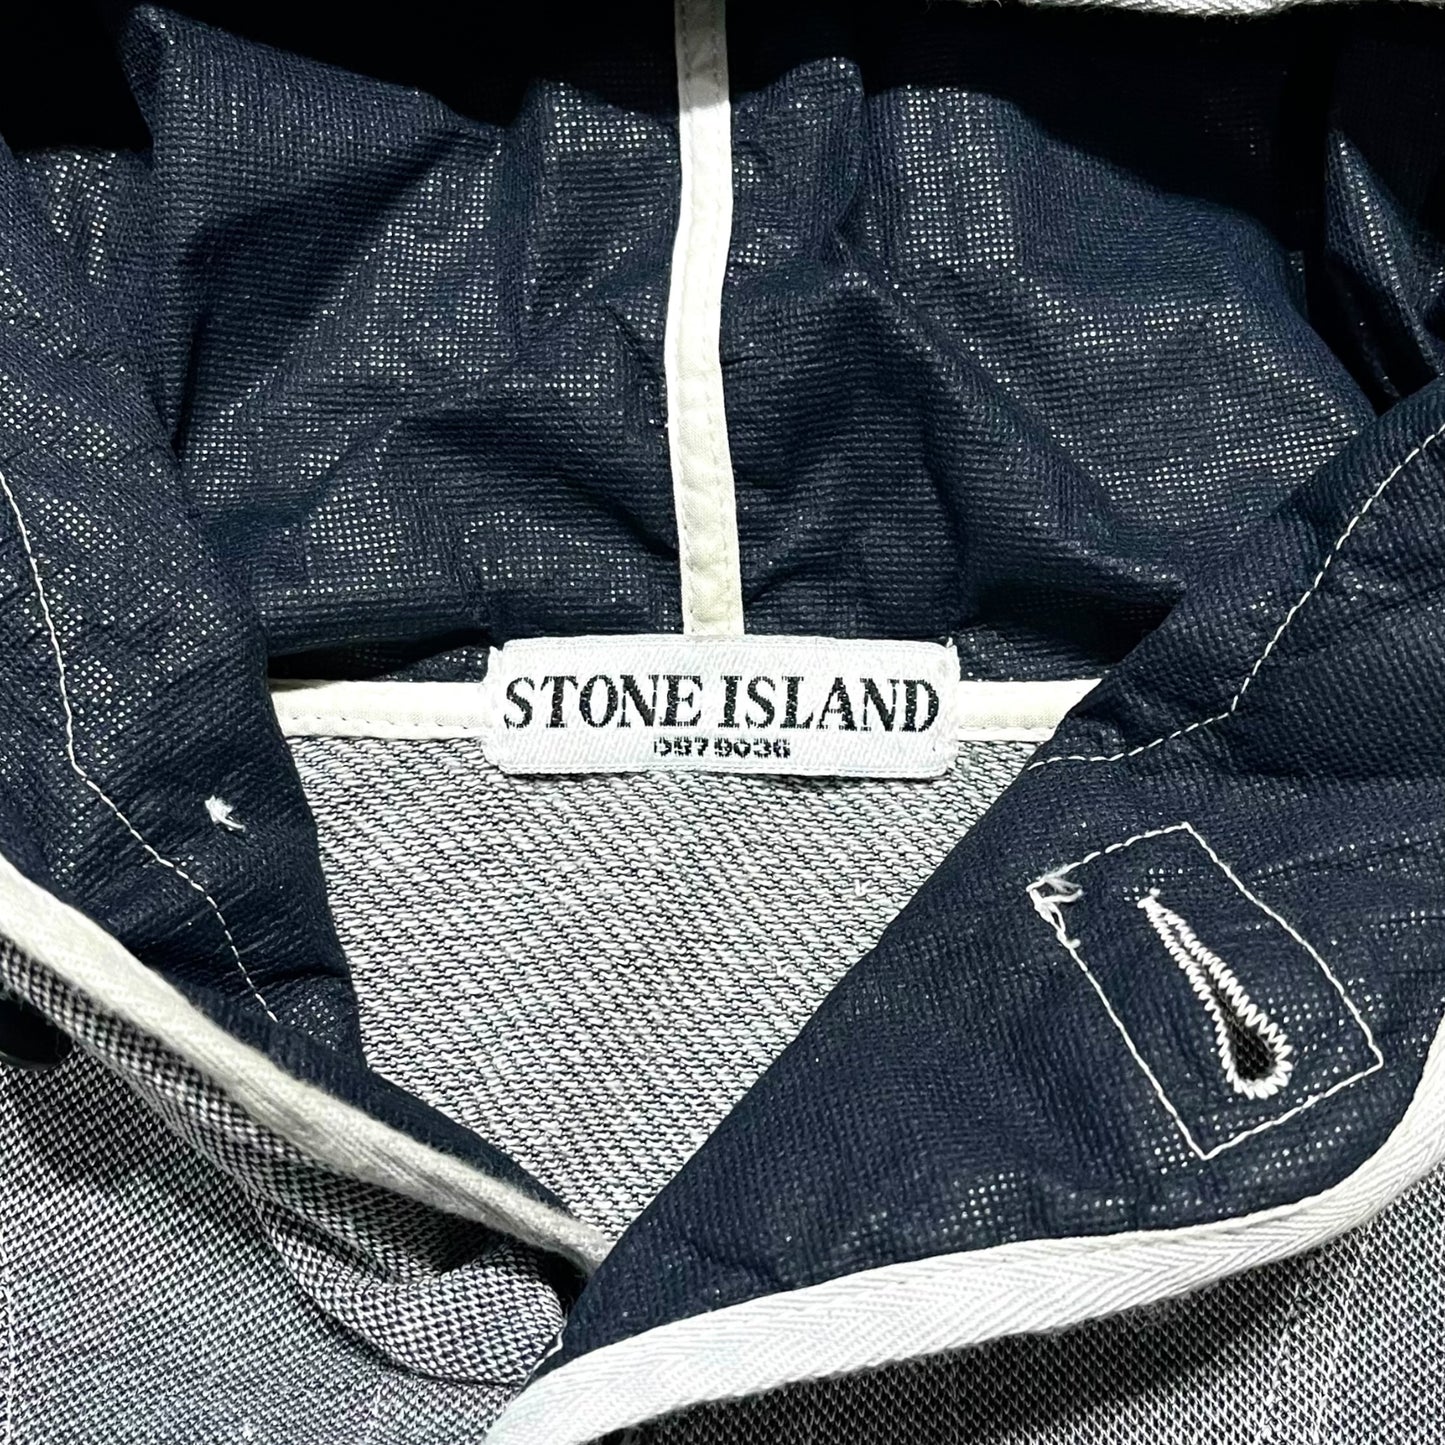 2007's S/S "STONE ISLAND" Half button cutsew